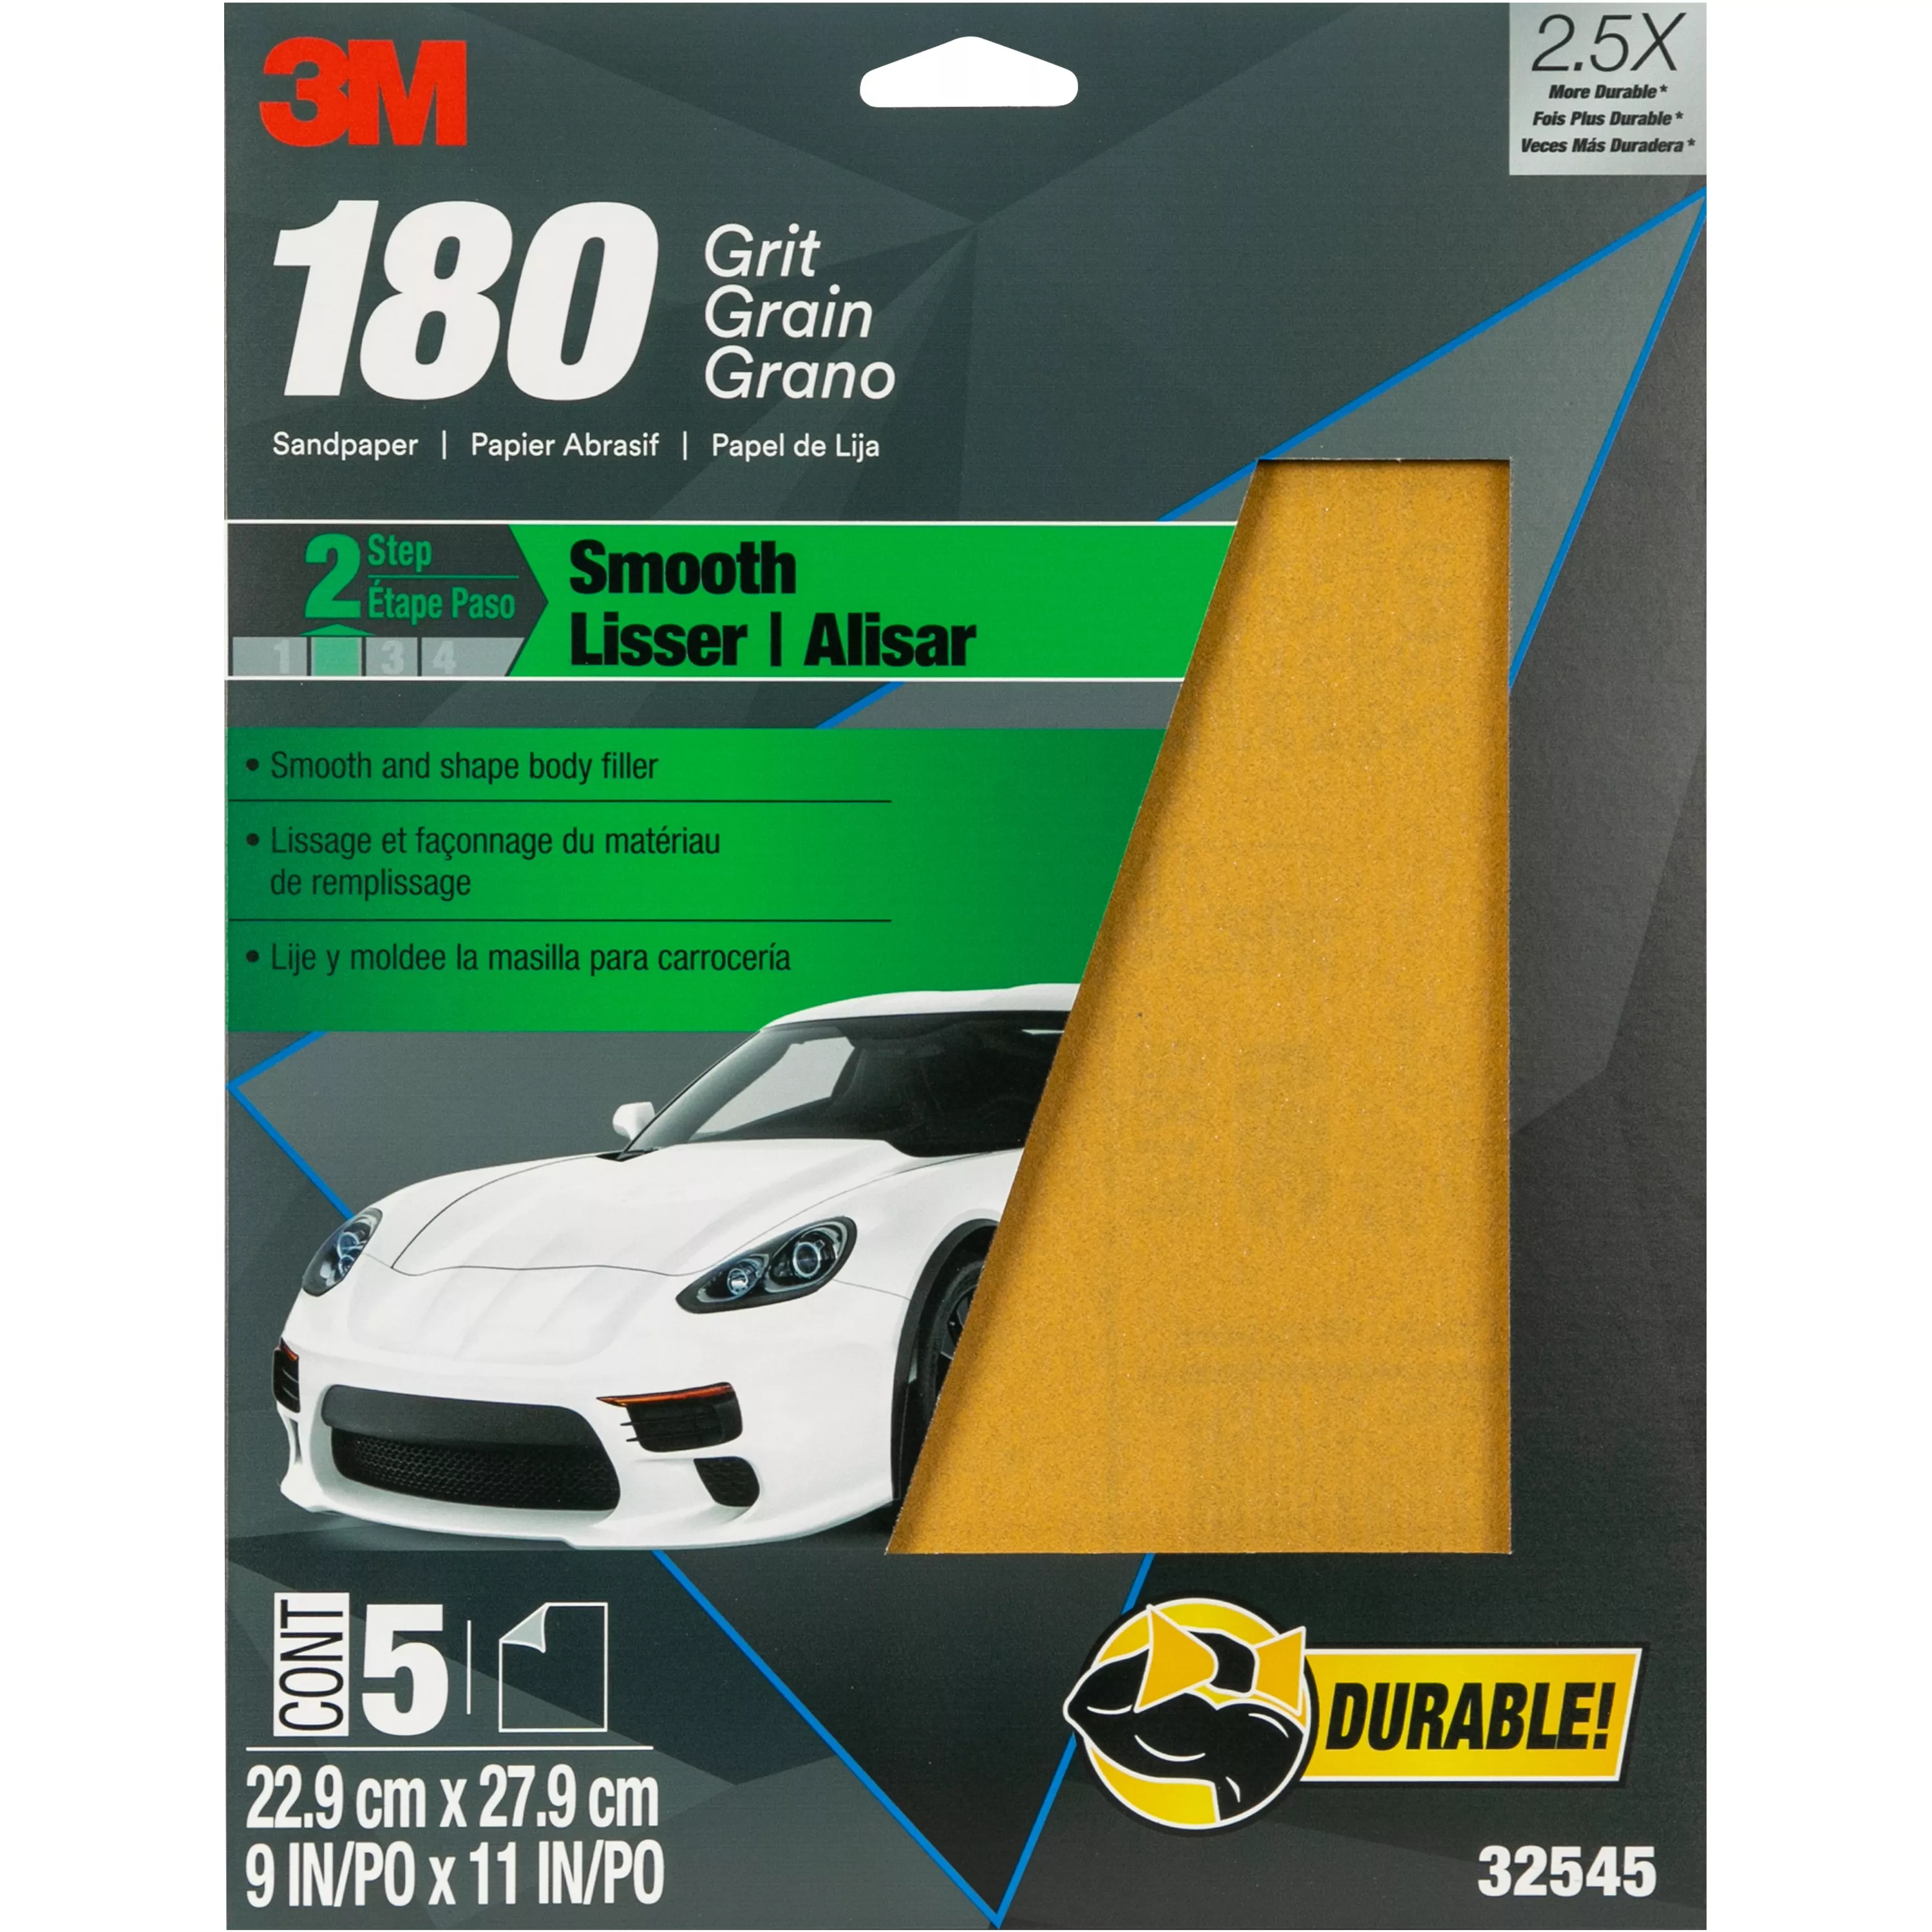 3M™ Sandpaper, 32545, 180 Grit, 9 in x 11 in, 20 per case